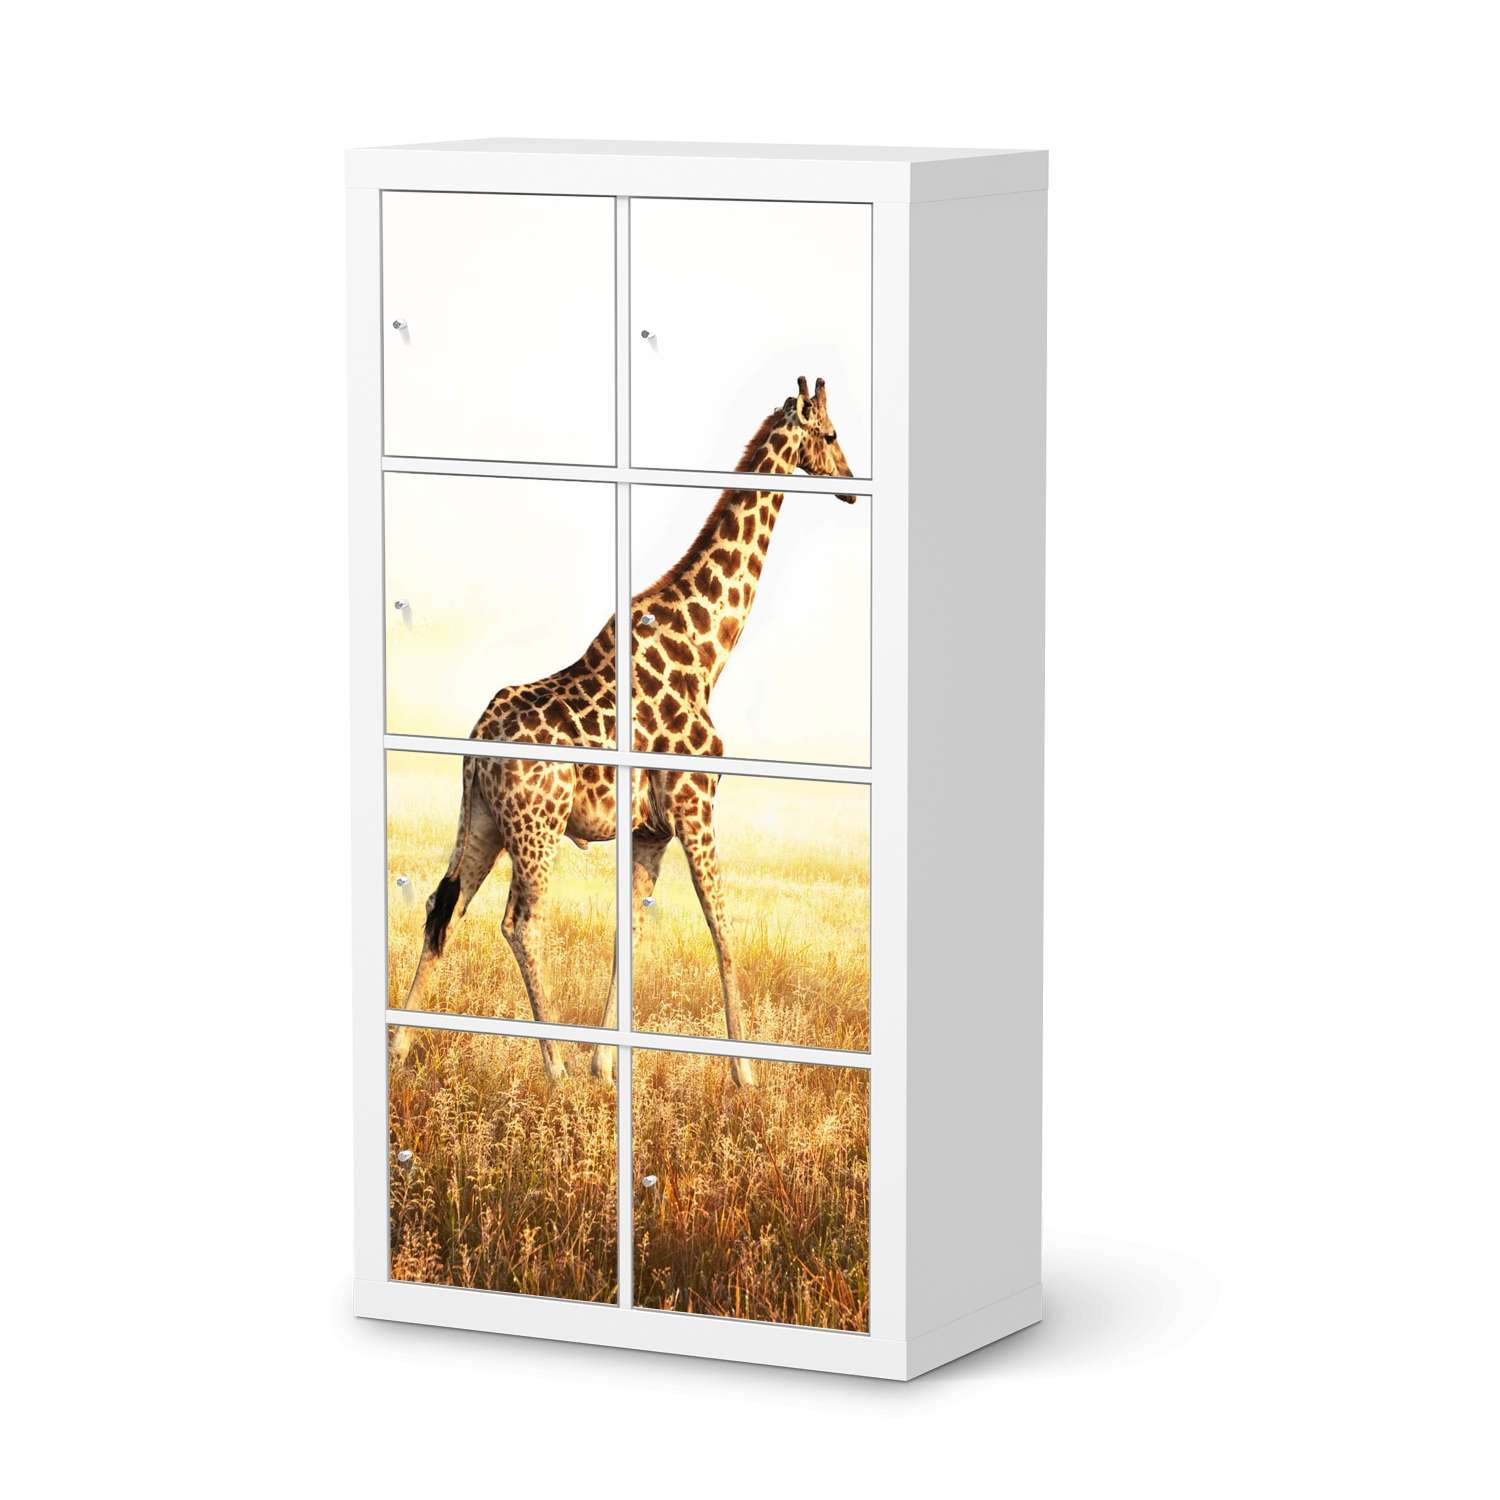 Klebefolie IKEA Expedit Regal 8 T?ren - Design: Savanna Giraffe von creatisto